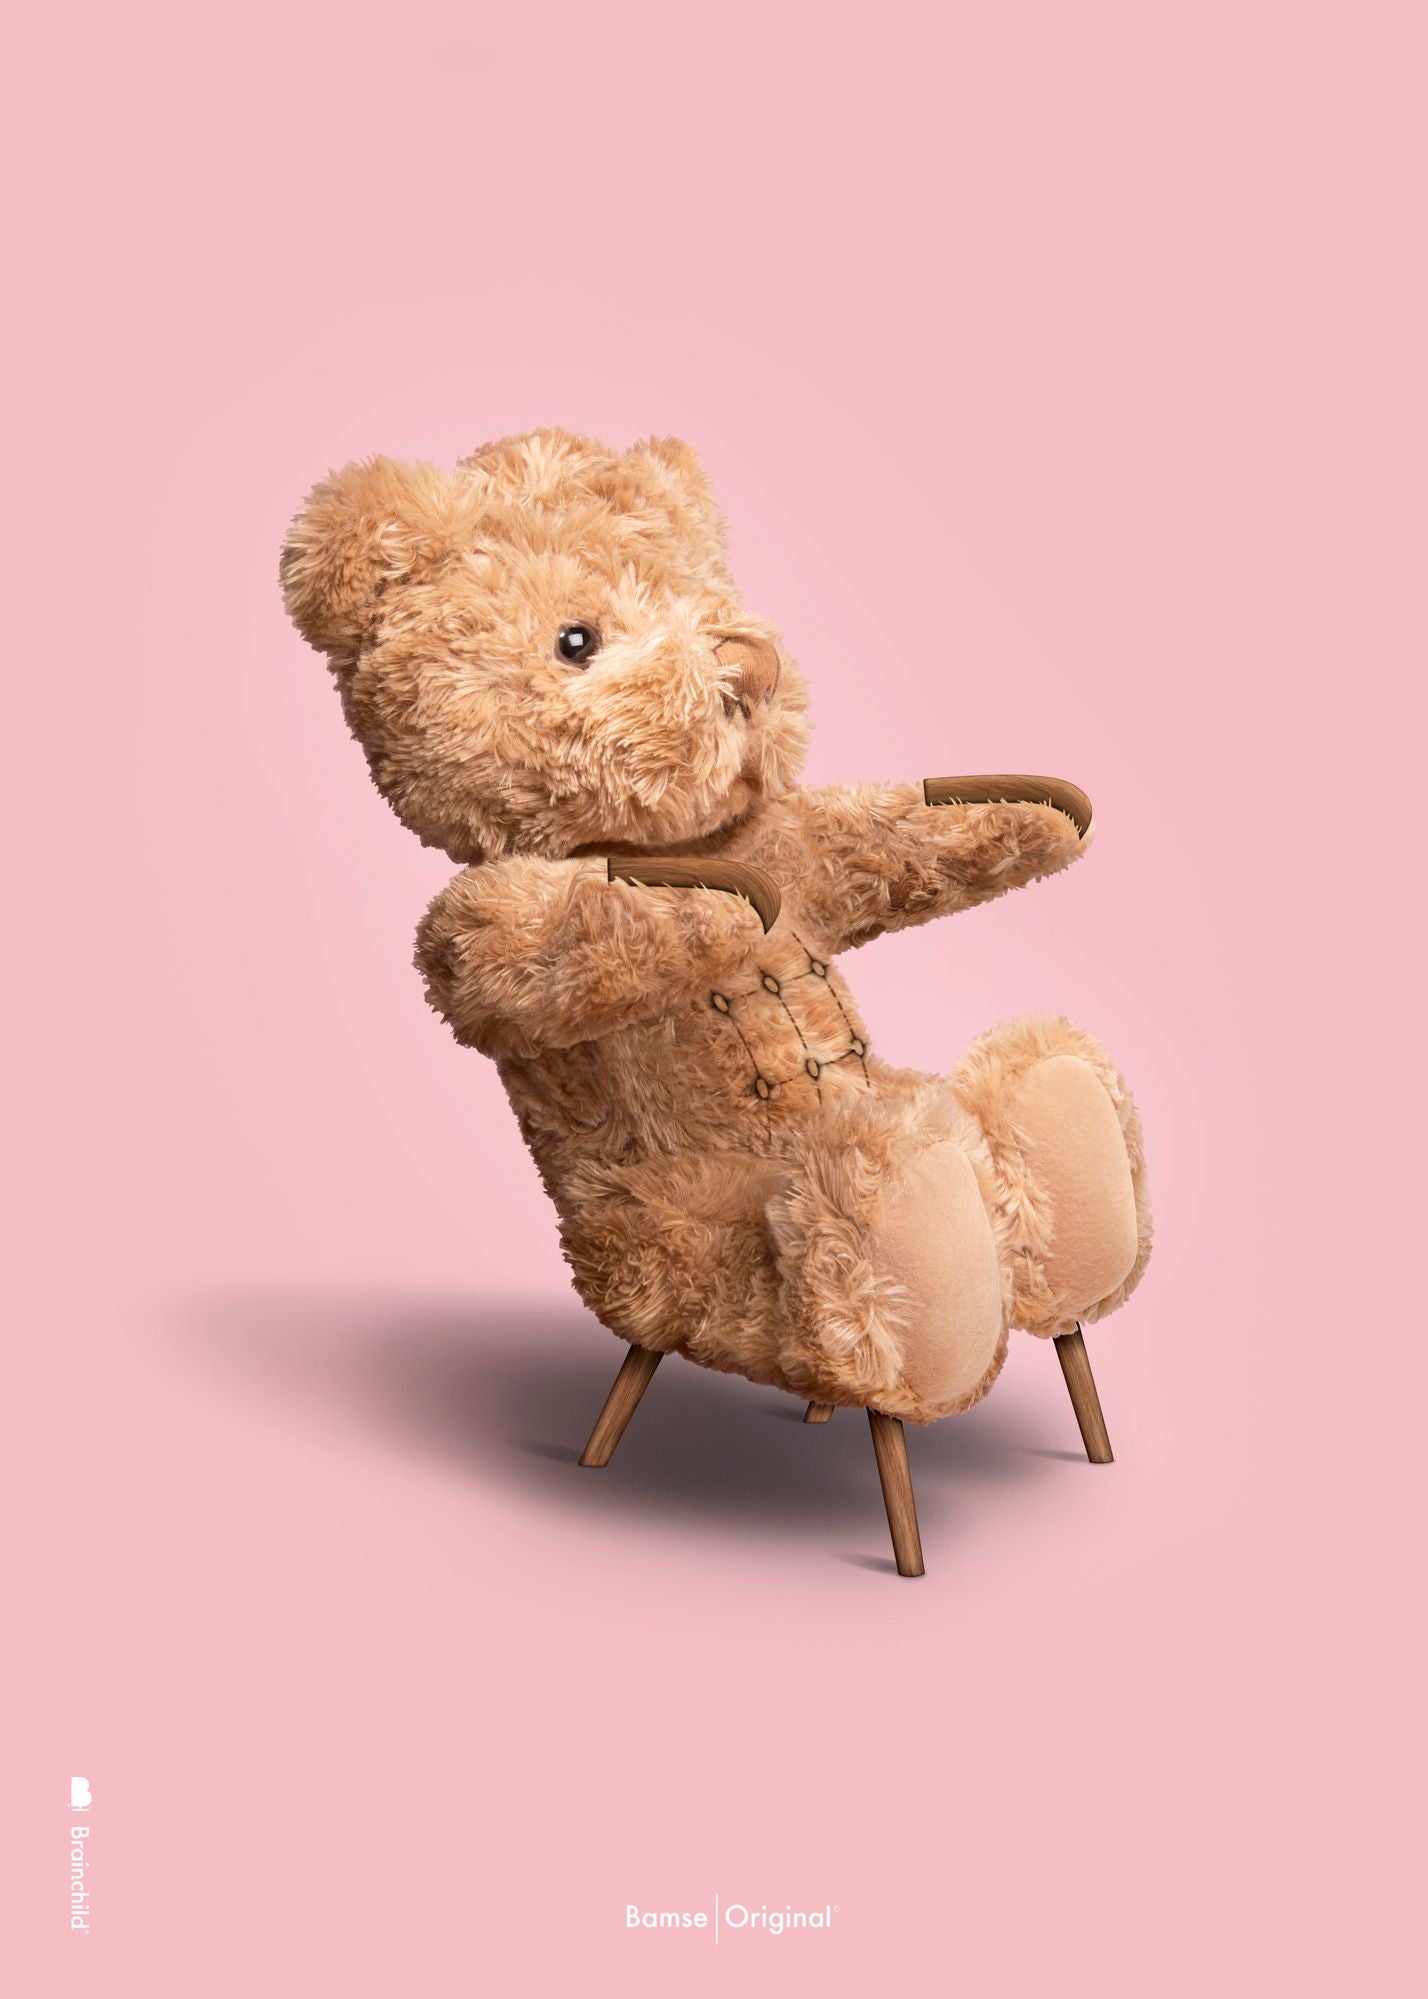 Brainchild Teddy Bear Classic Poster uten ramme 70x100 cm, rosa bakgrunn